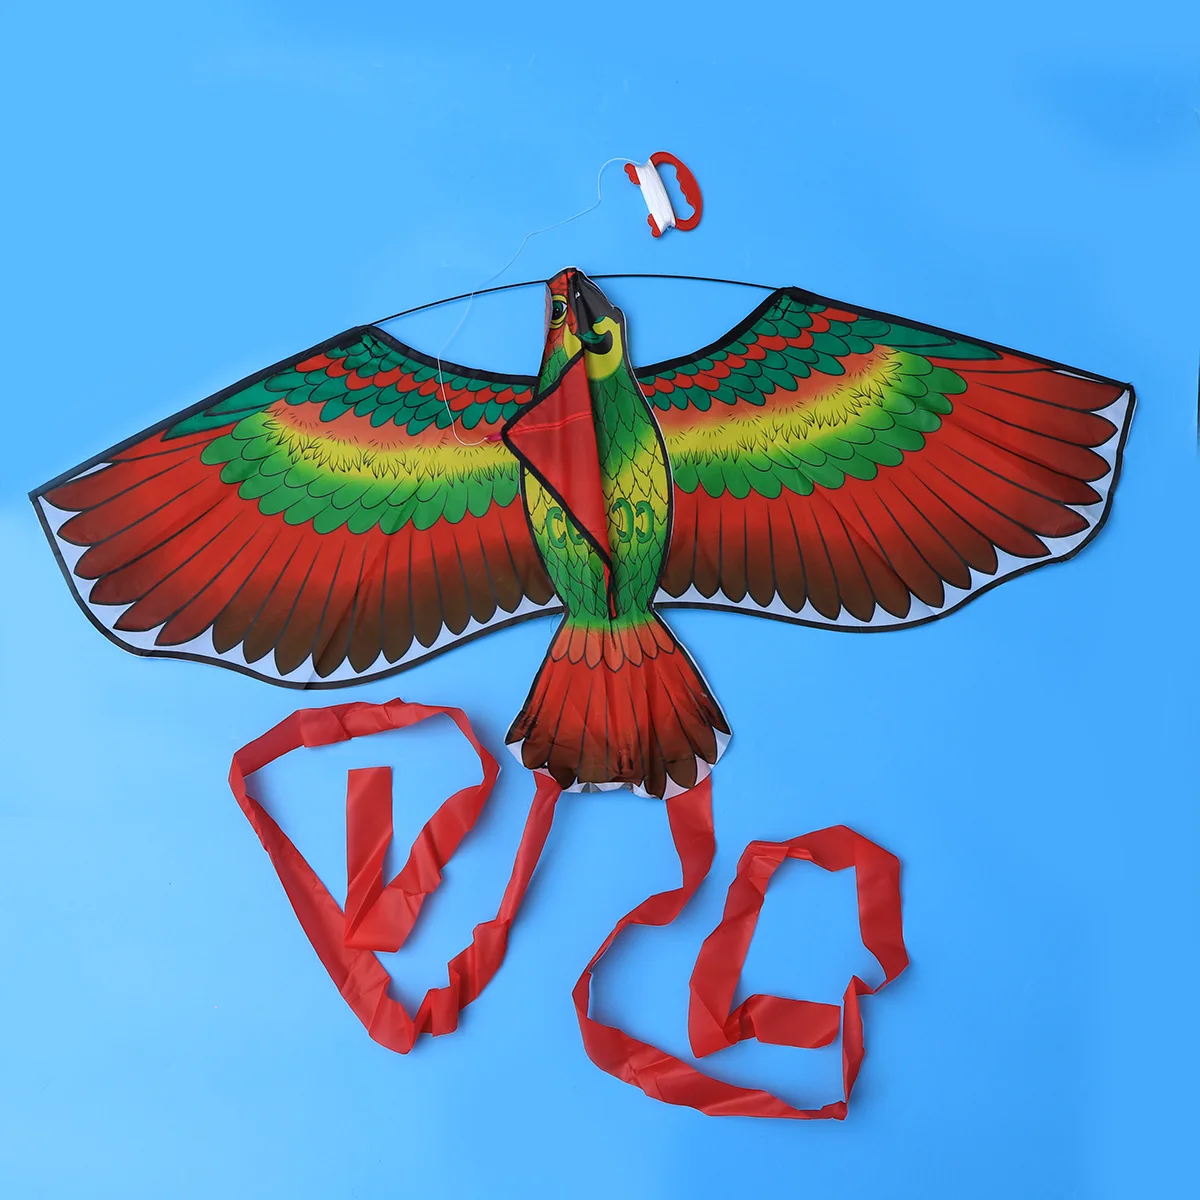 NEW Kites For Kids Children Lovely Cartoon Red Parrot Kites With Flying Line UK 